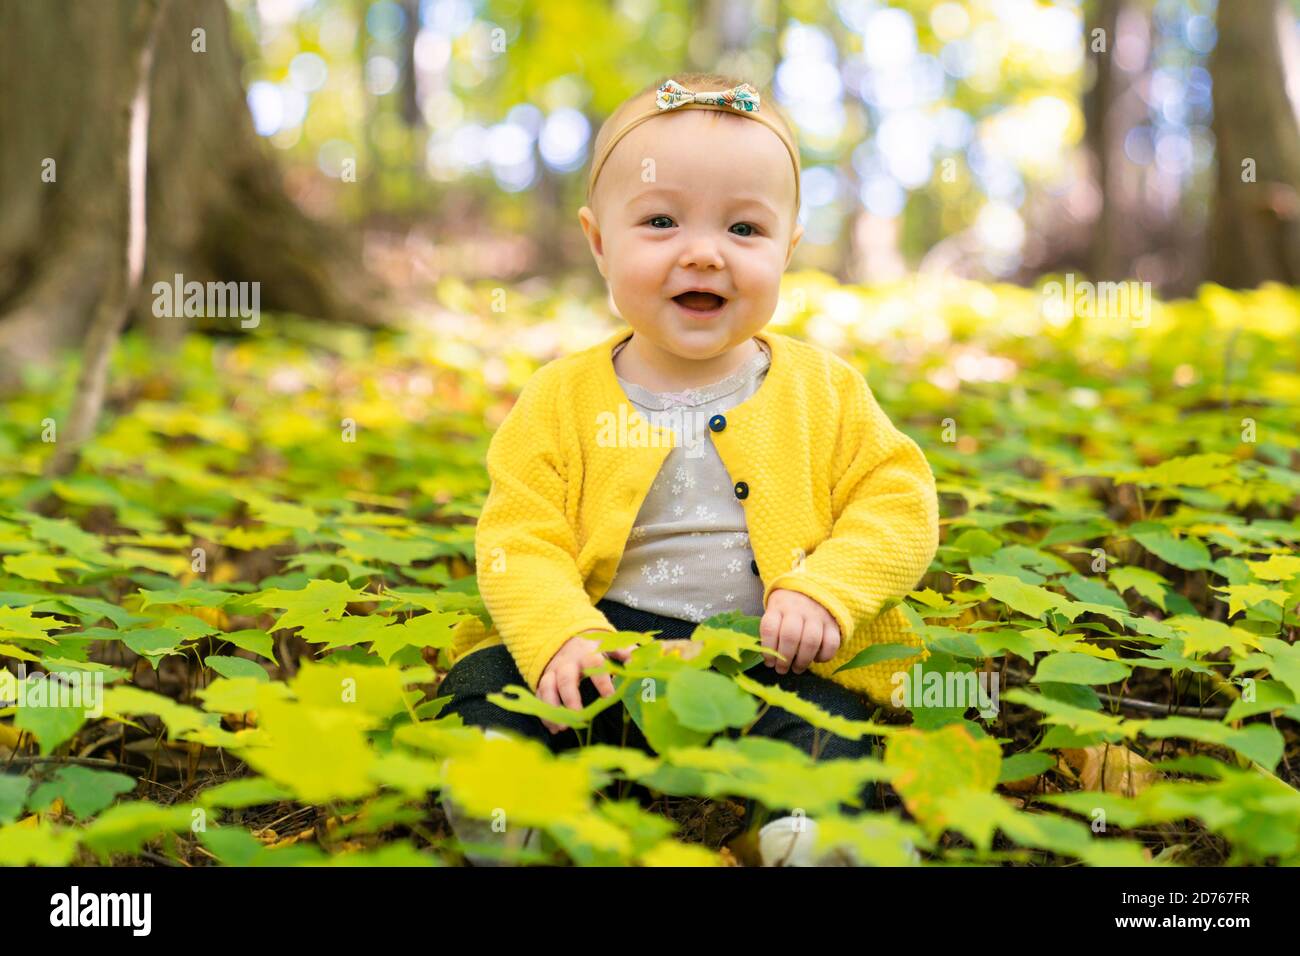 el bebé se sienta en el suelo en un bosque Foto de stock